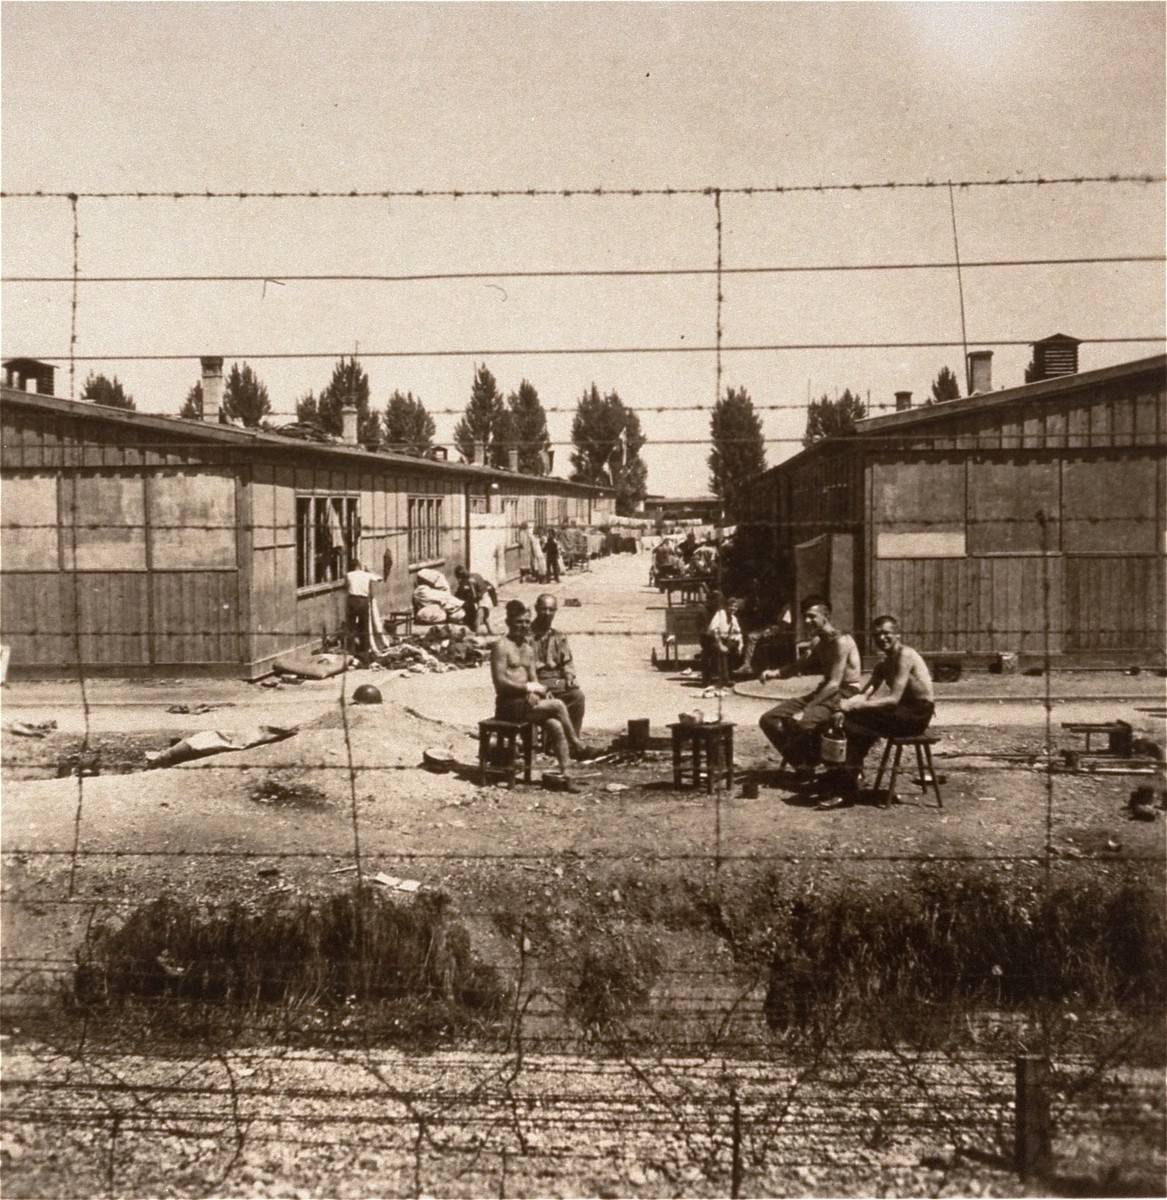 Survivors in Dachau.